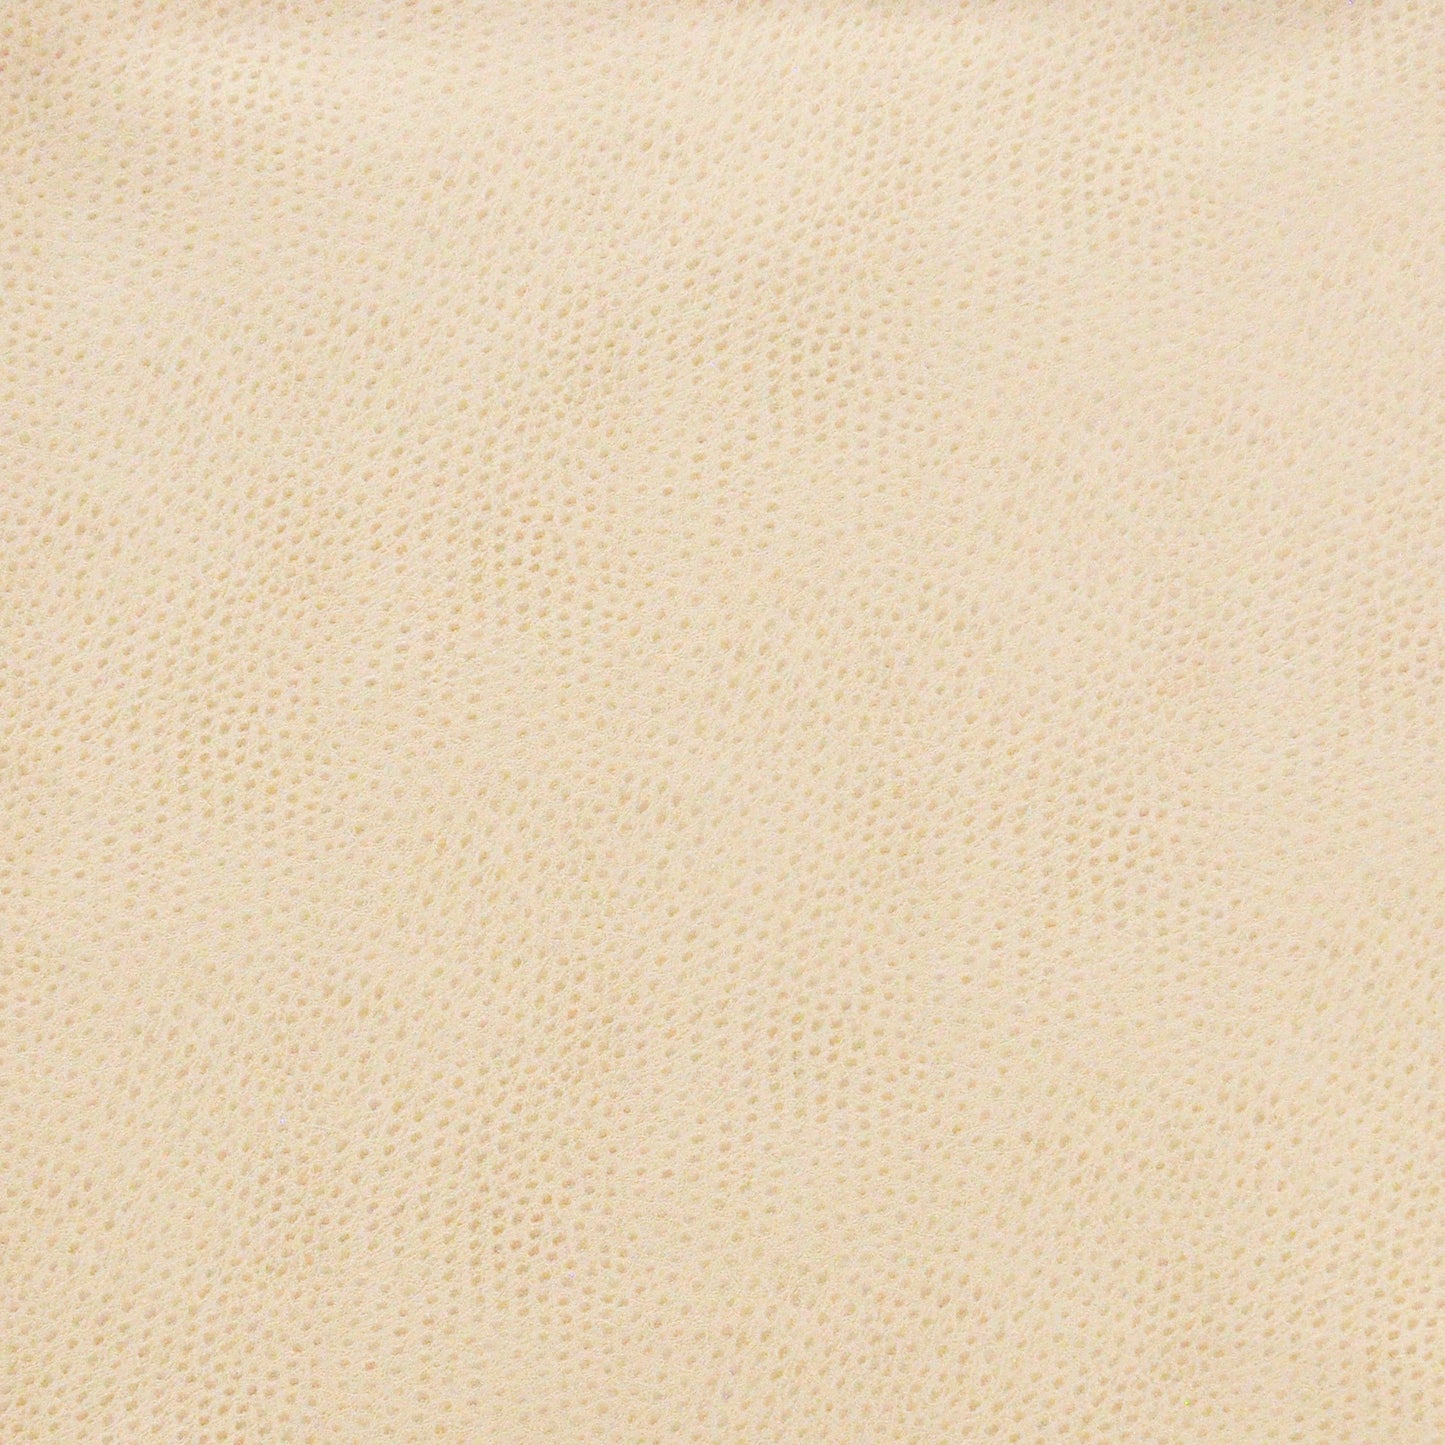 Purchase Maxwell Fabric - Buckeye, # 702 Marshmallow